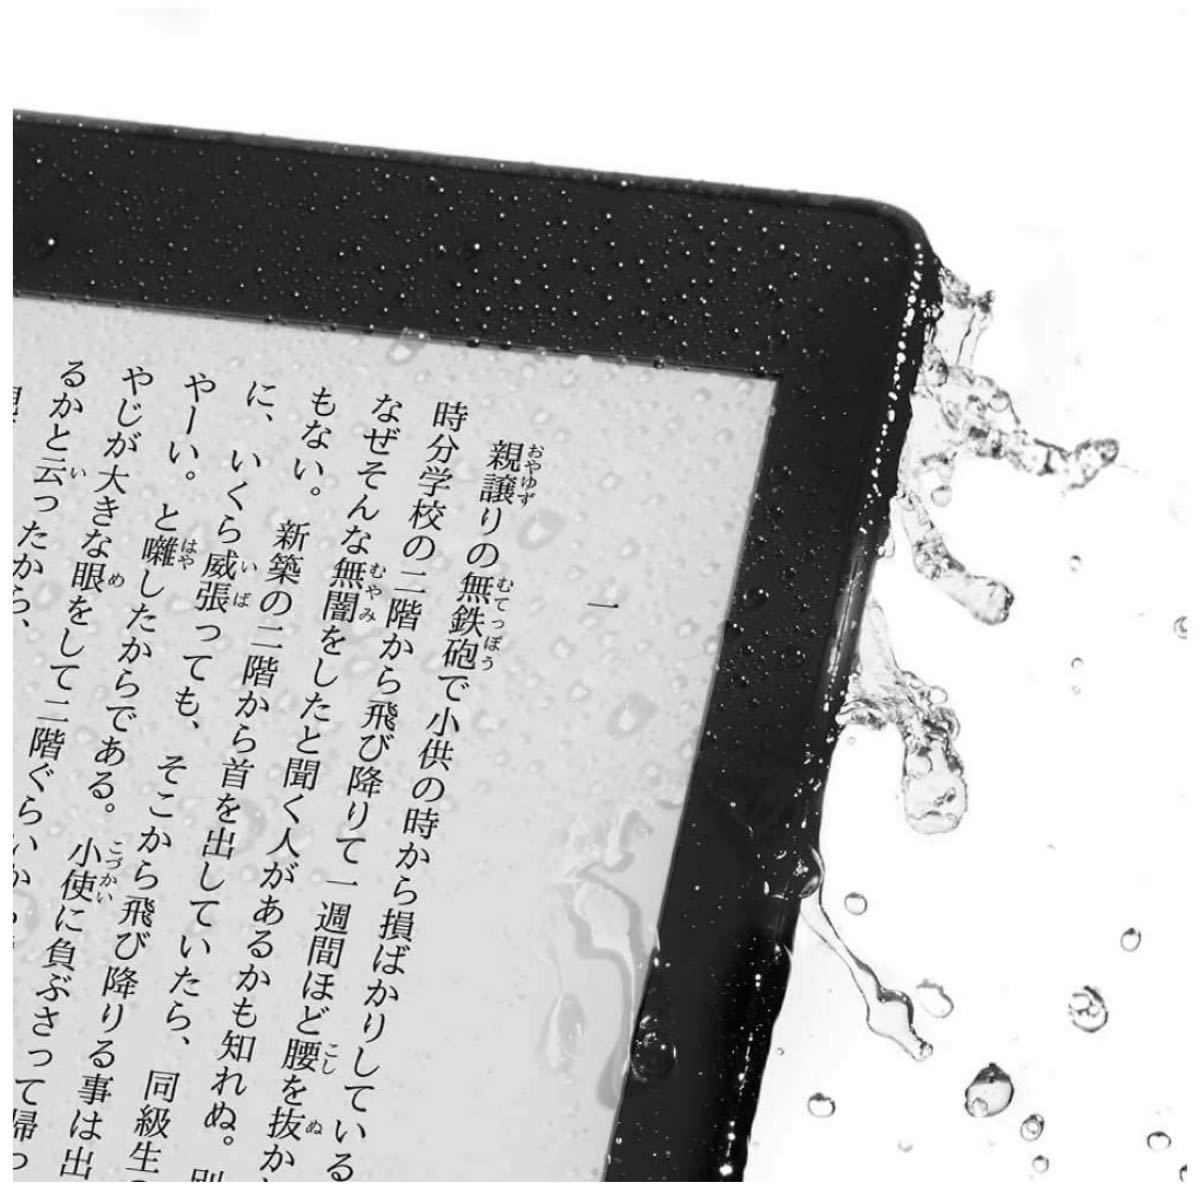 未開封新品 Amazon Kindle Paper white 32GBブラック 防水機能 広告付き Wi-Fi 電子書籍リーダー